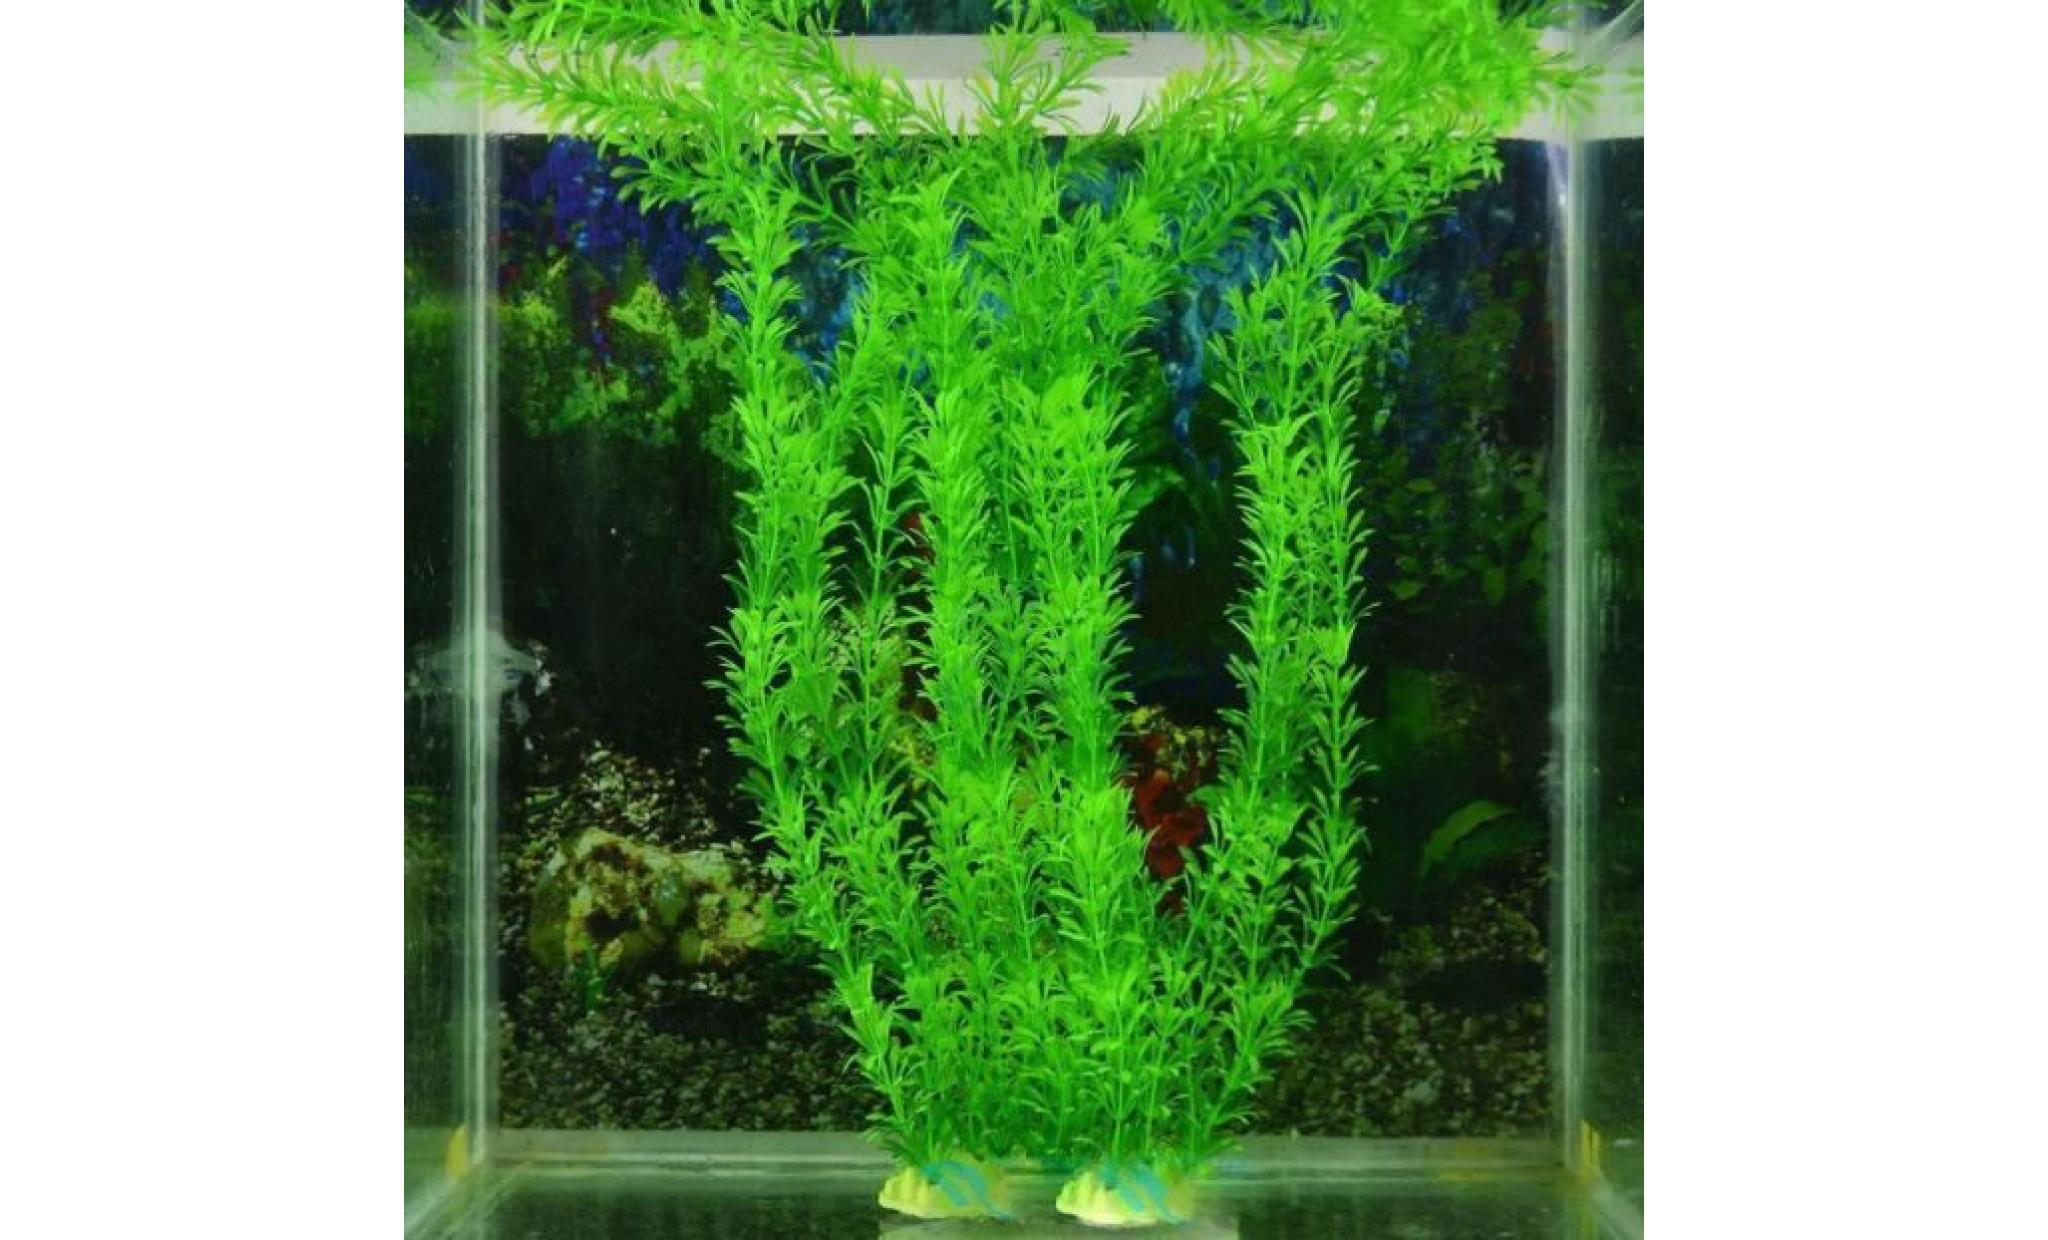 livraison gratuite 13 plastique gazon artificiel réservoir de poissons d'eau décoration rjt51